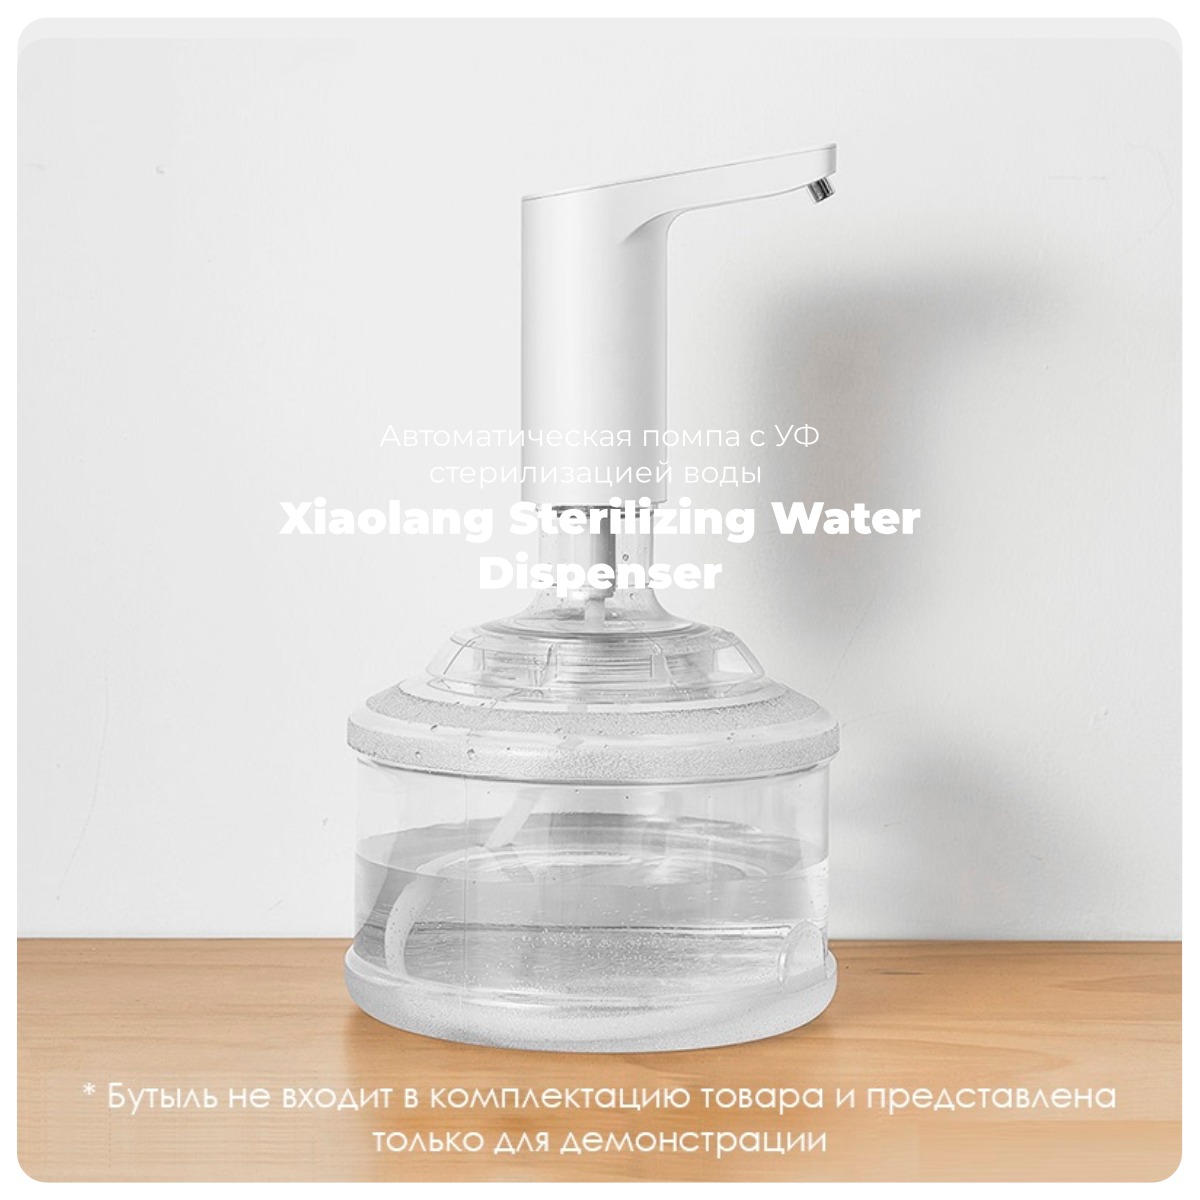 Xiaolang-Sterilizing-Water-Dispenser-HD-ZDCSJ06-01